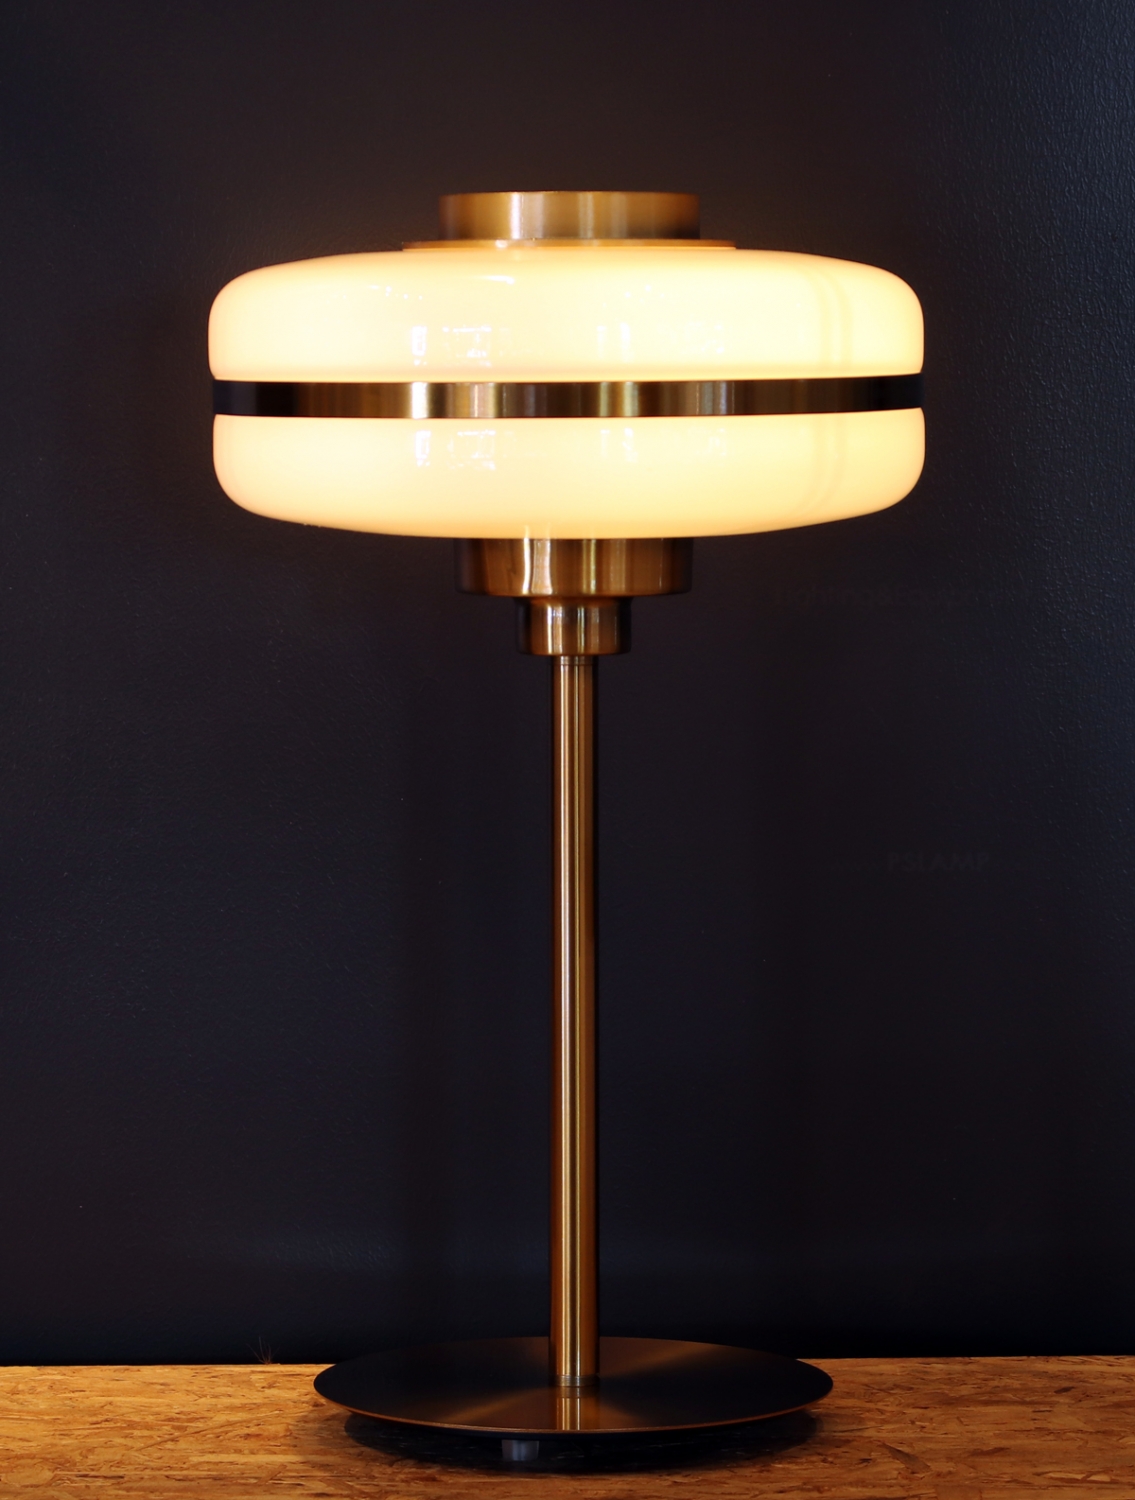 โคมไฟตั้งโต๊ะ-ร้านขายโคมไฟ-TRISMA-GD